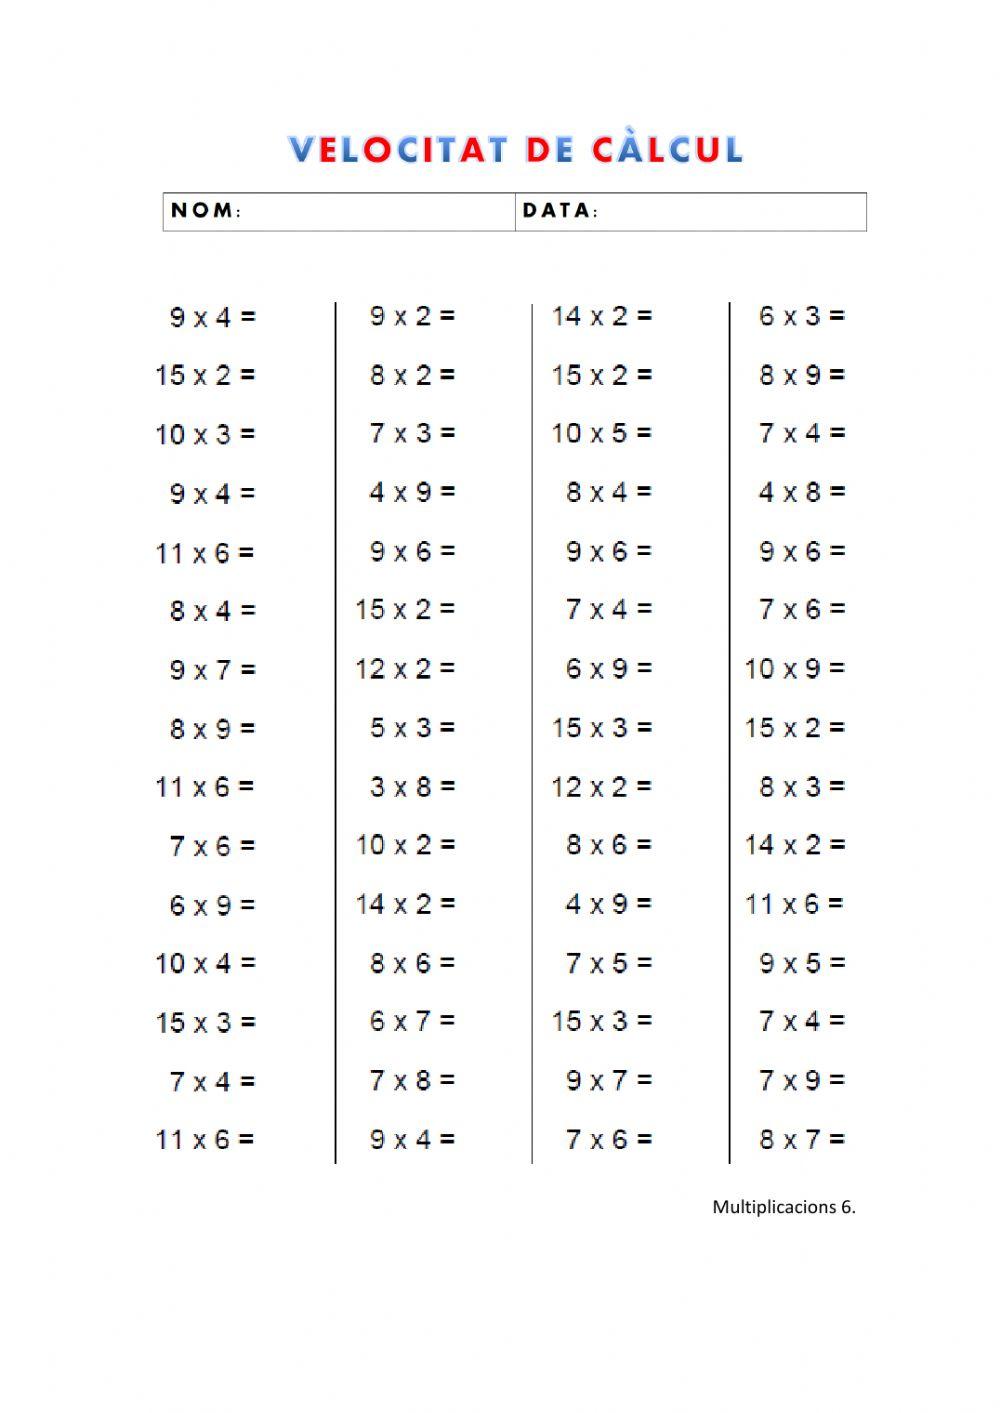 Velocitat de càlcul: multiplicacions 6